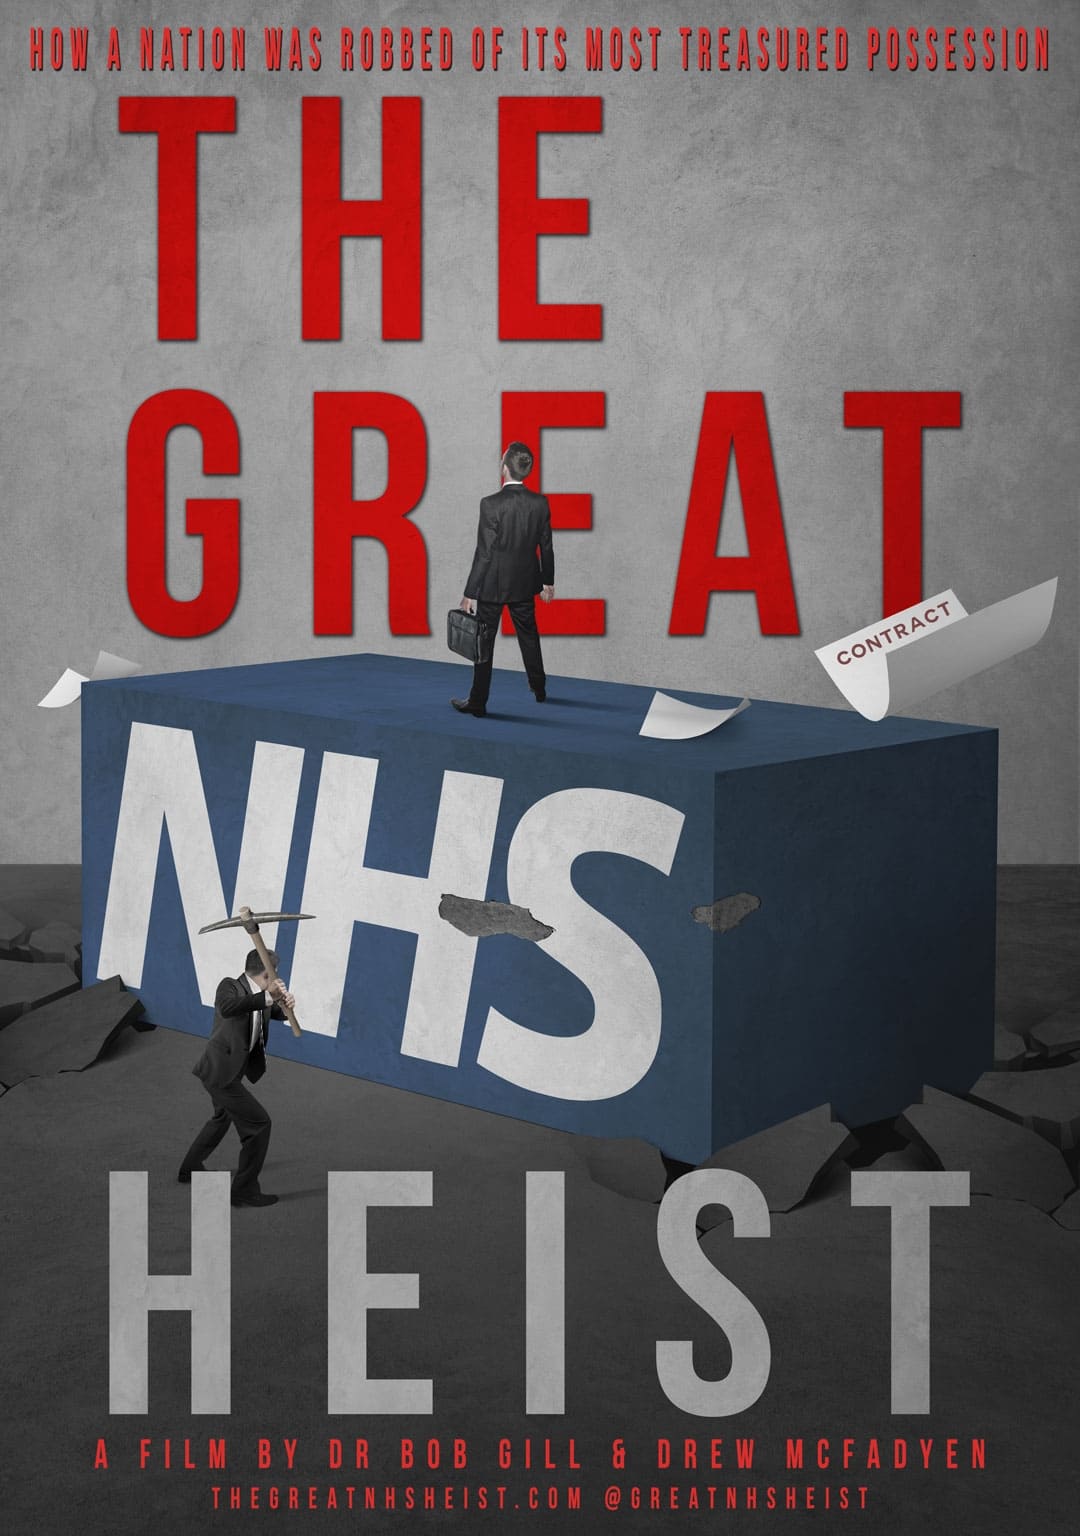 The Great NHS Heist